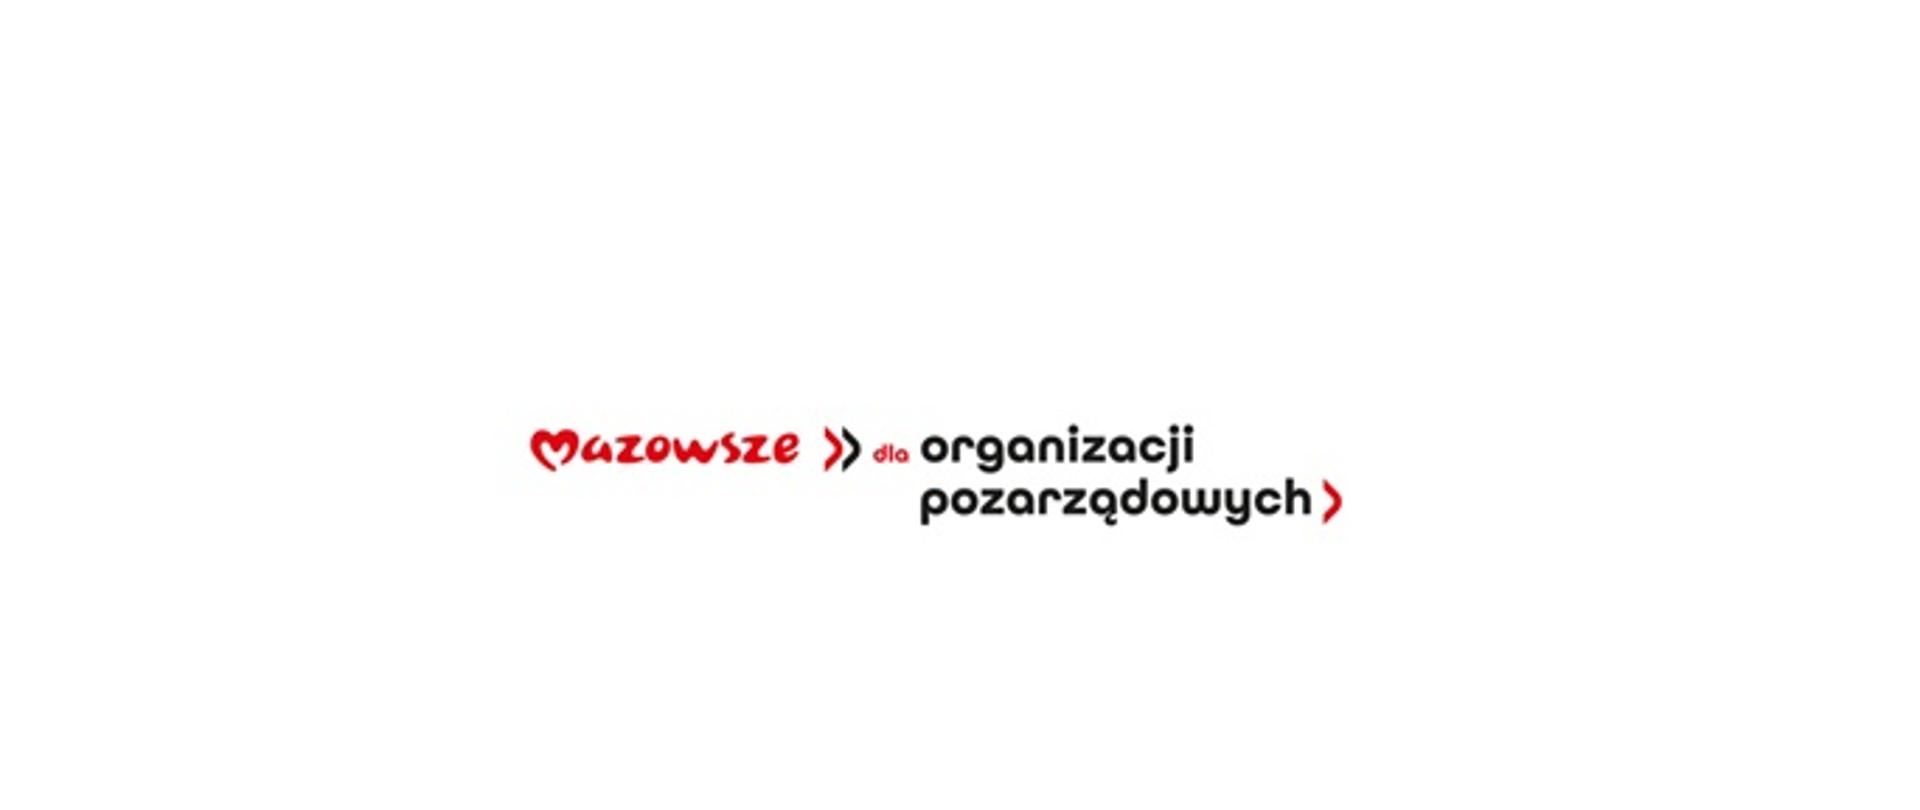 Logo przedstawia napis Mazowsze zapisany czerwonymi literami i sercem zamiast litery M oraz dopisek dla organizacji pozarządowych w kolorze czarnym